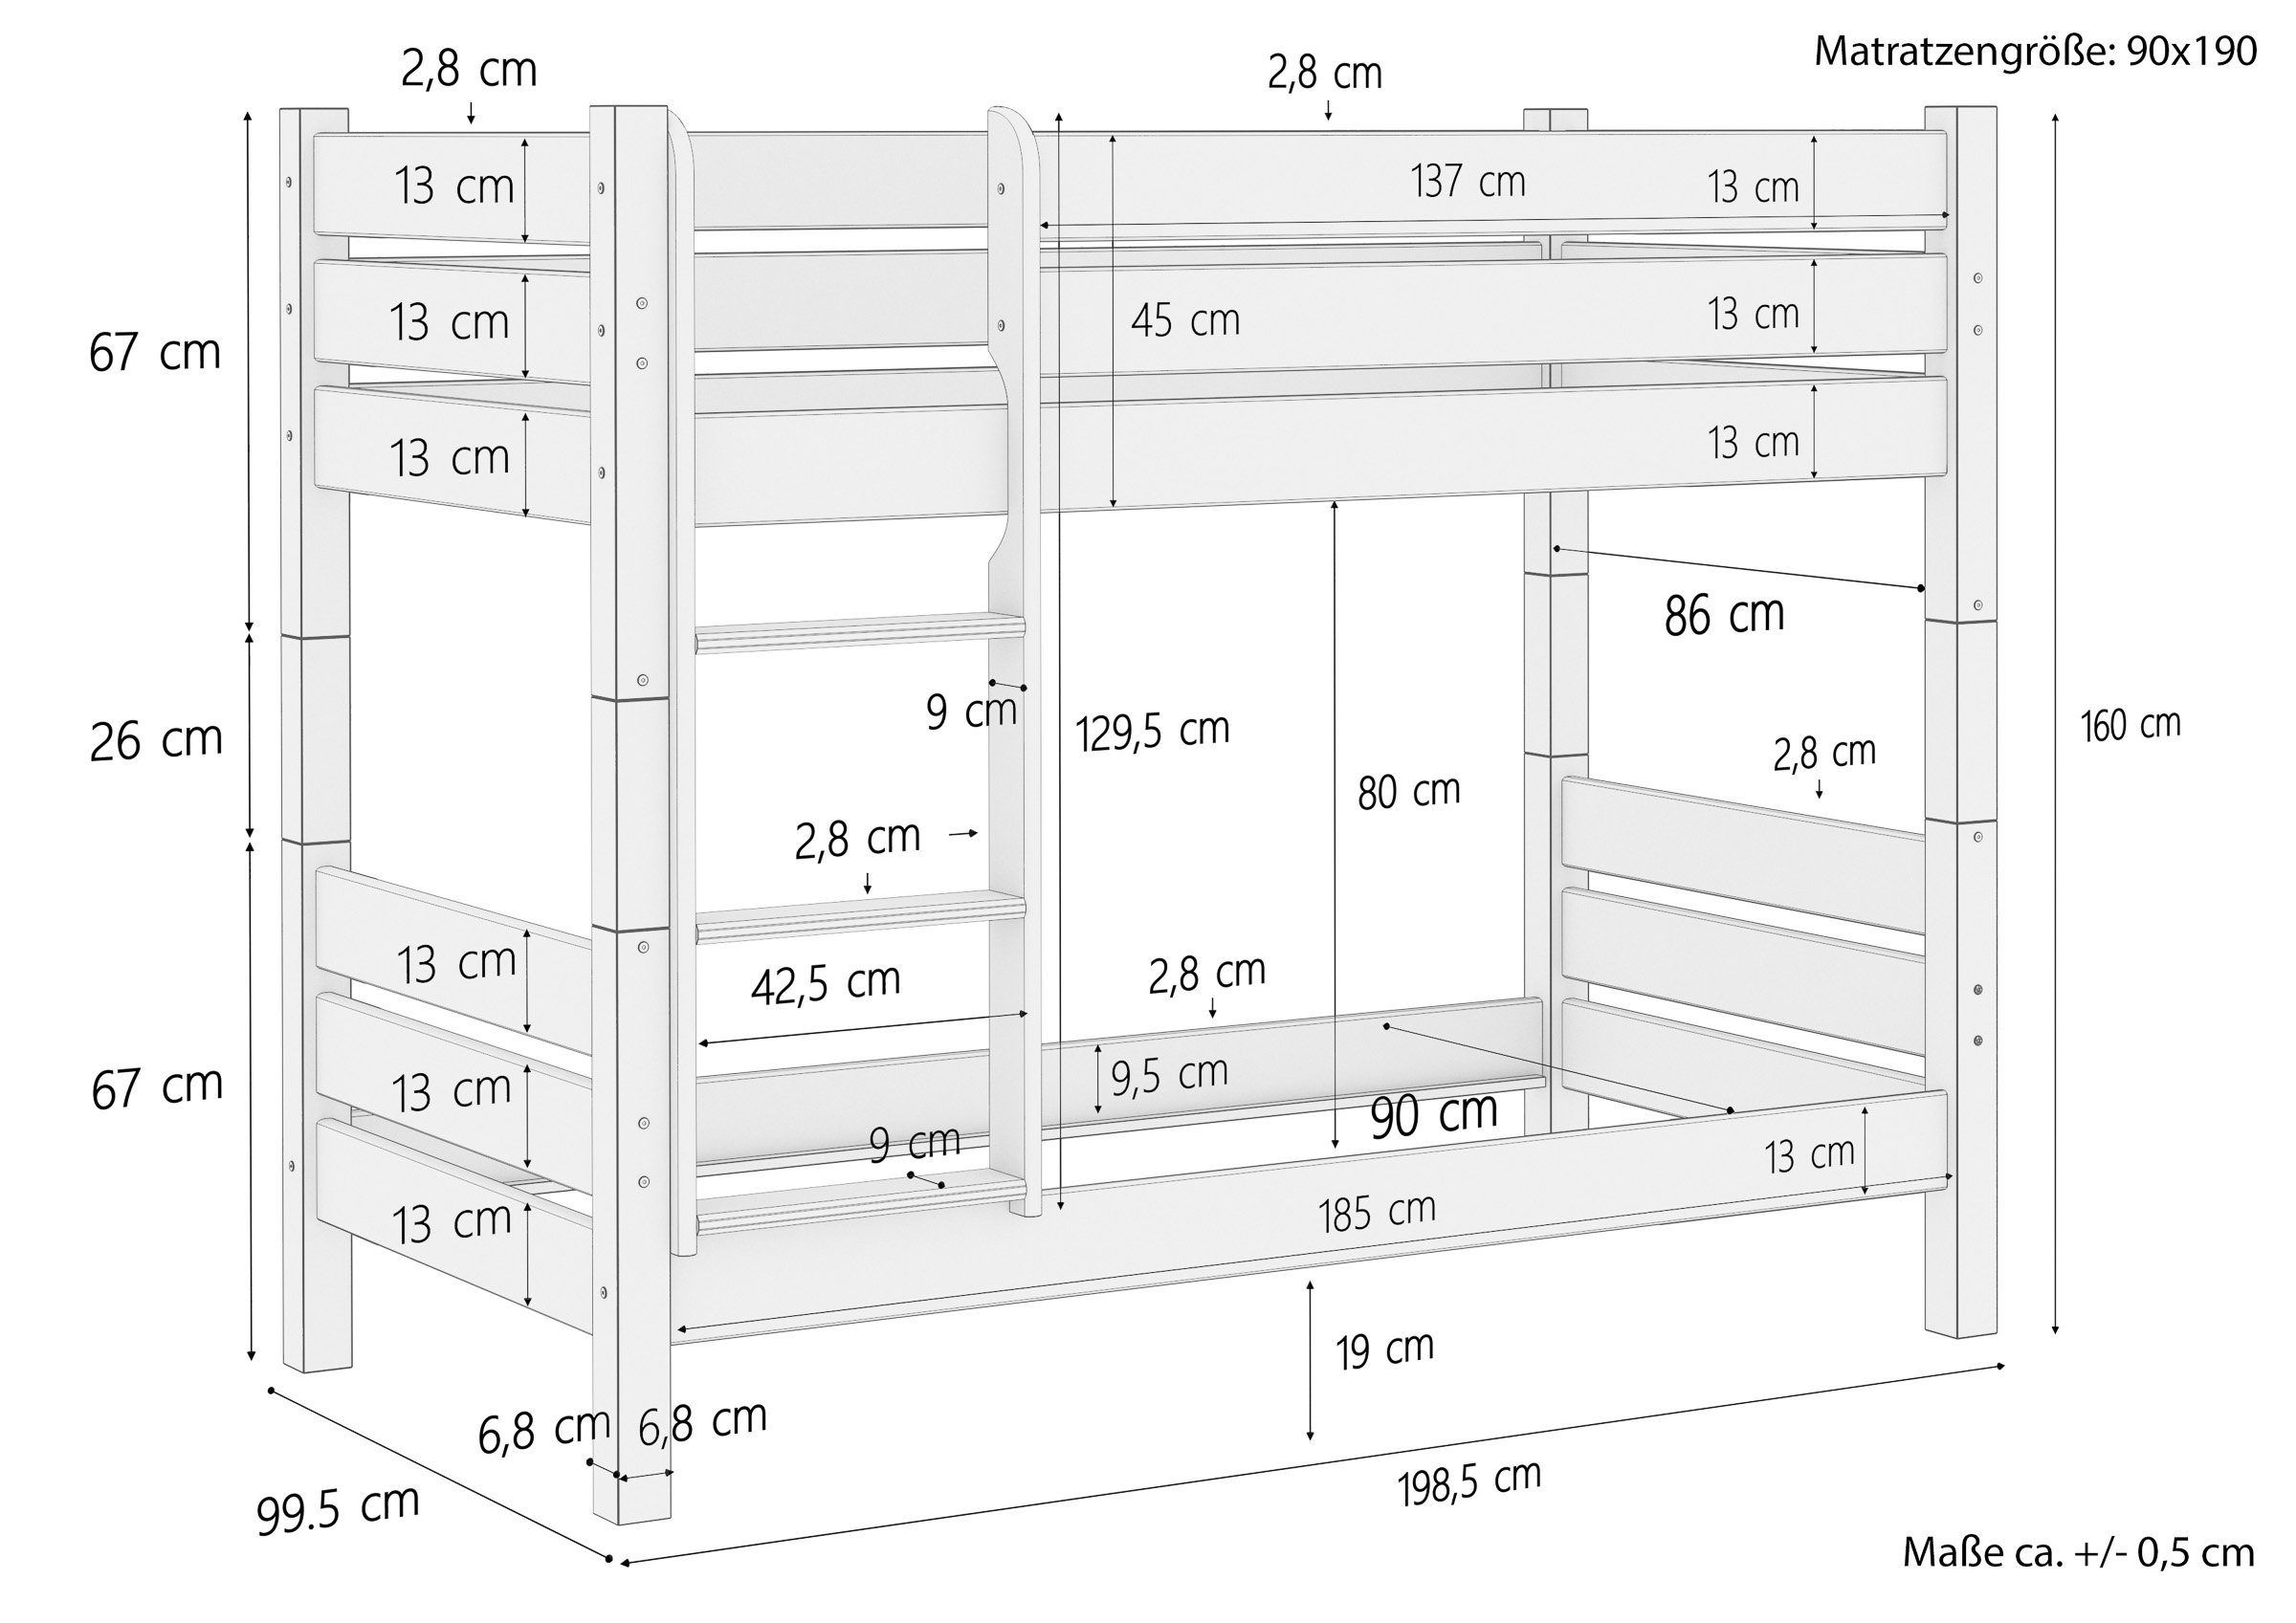 90x190 Holzetagenbett in stabil Matratzen Etagenbett mit und teilbar ERST-HOLZ Rost weiß